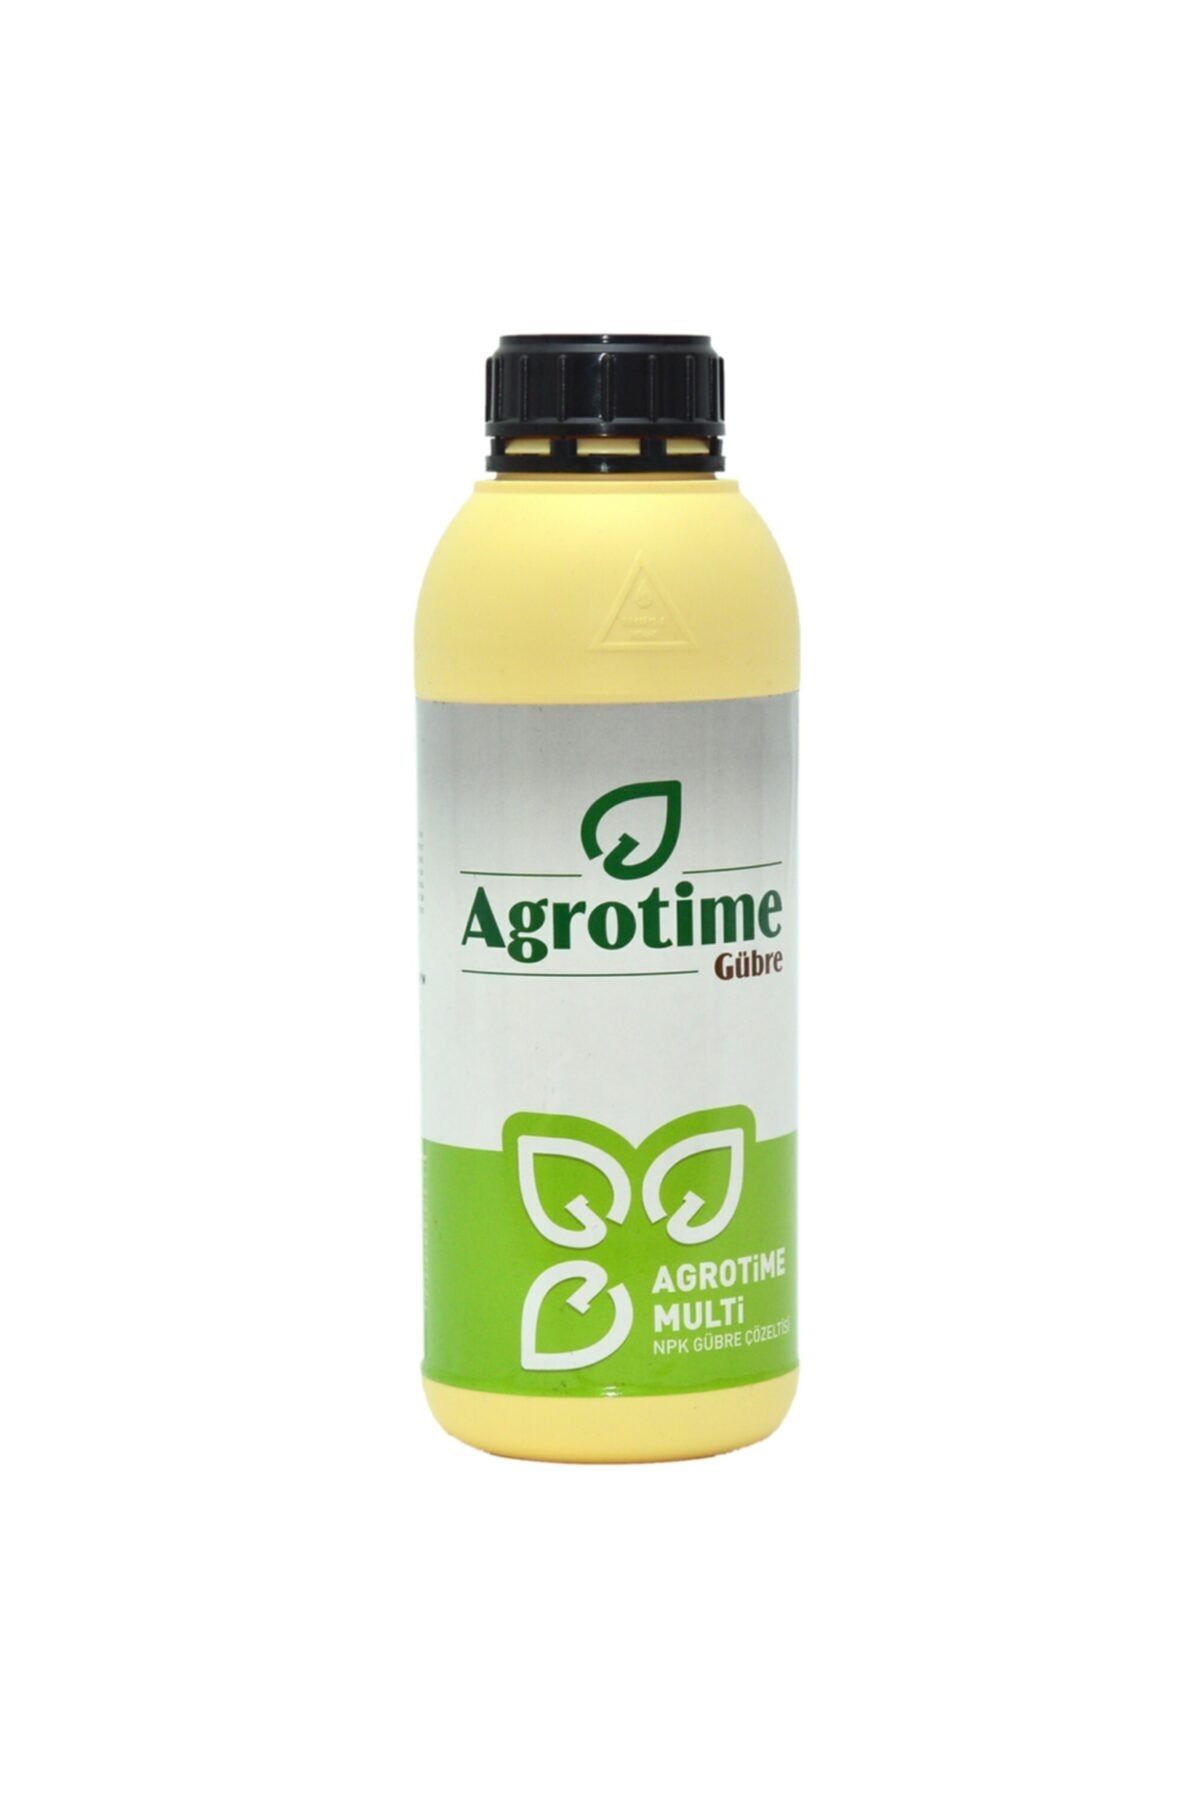 Agrotime Agrotıme Multi Sıvı Gübre Çinko Ve Potasyumca Zengin 1 Lt